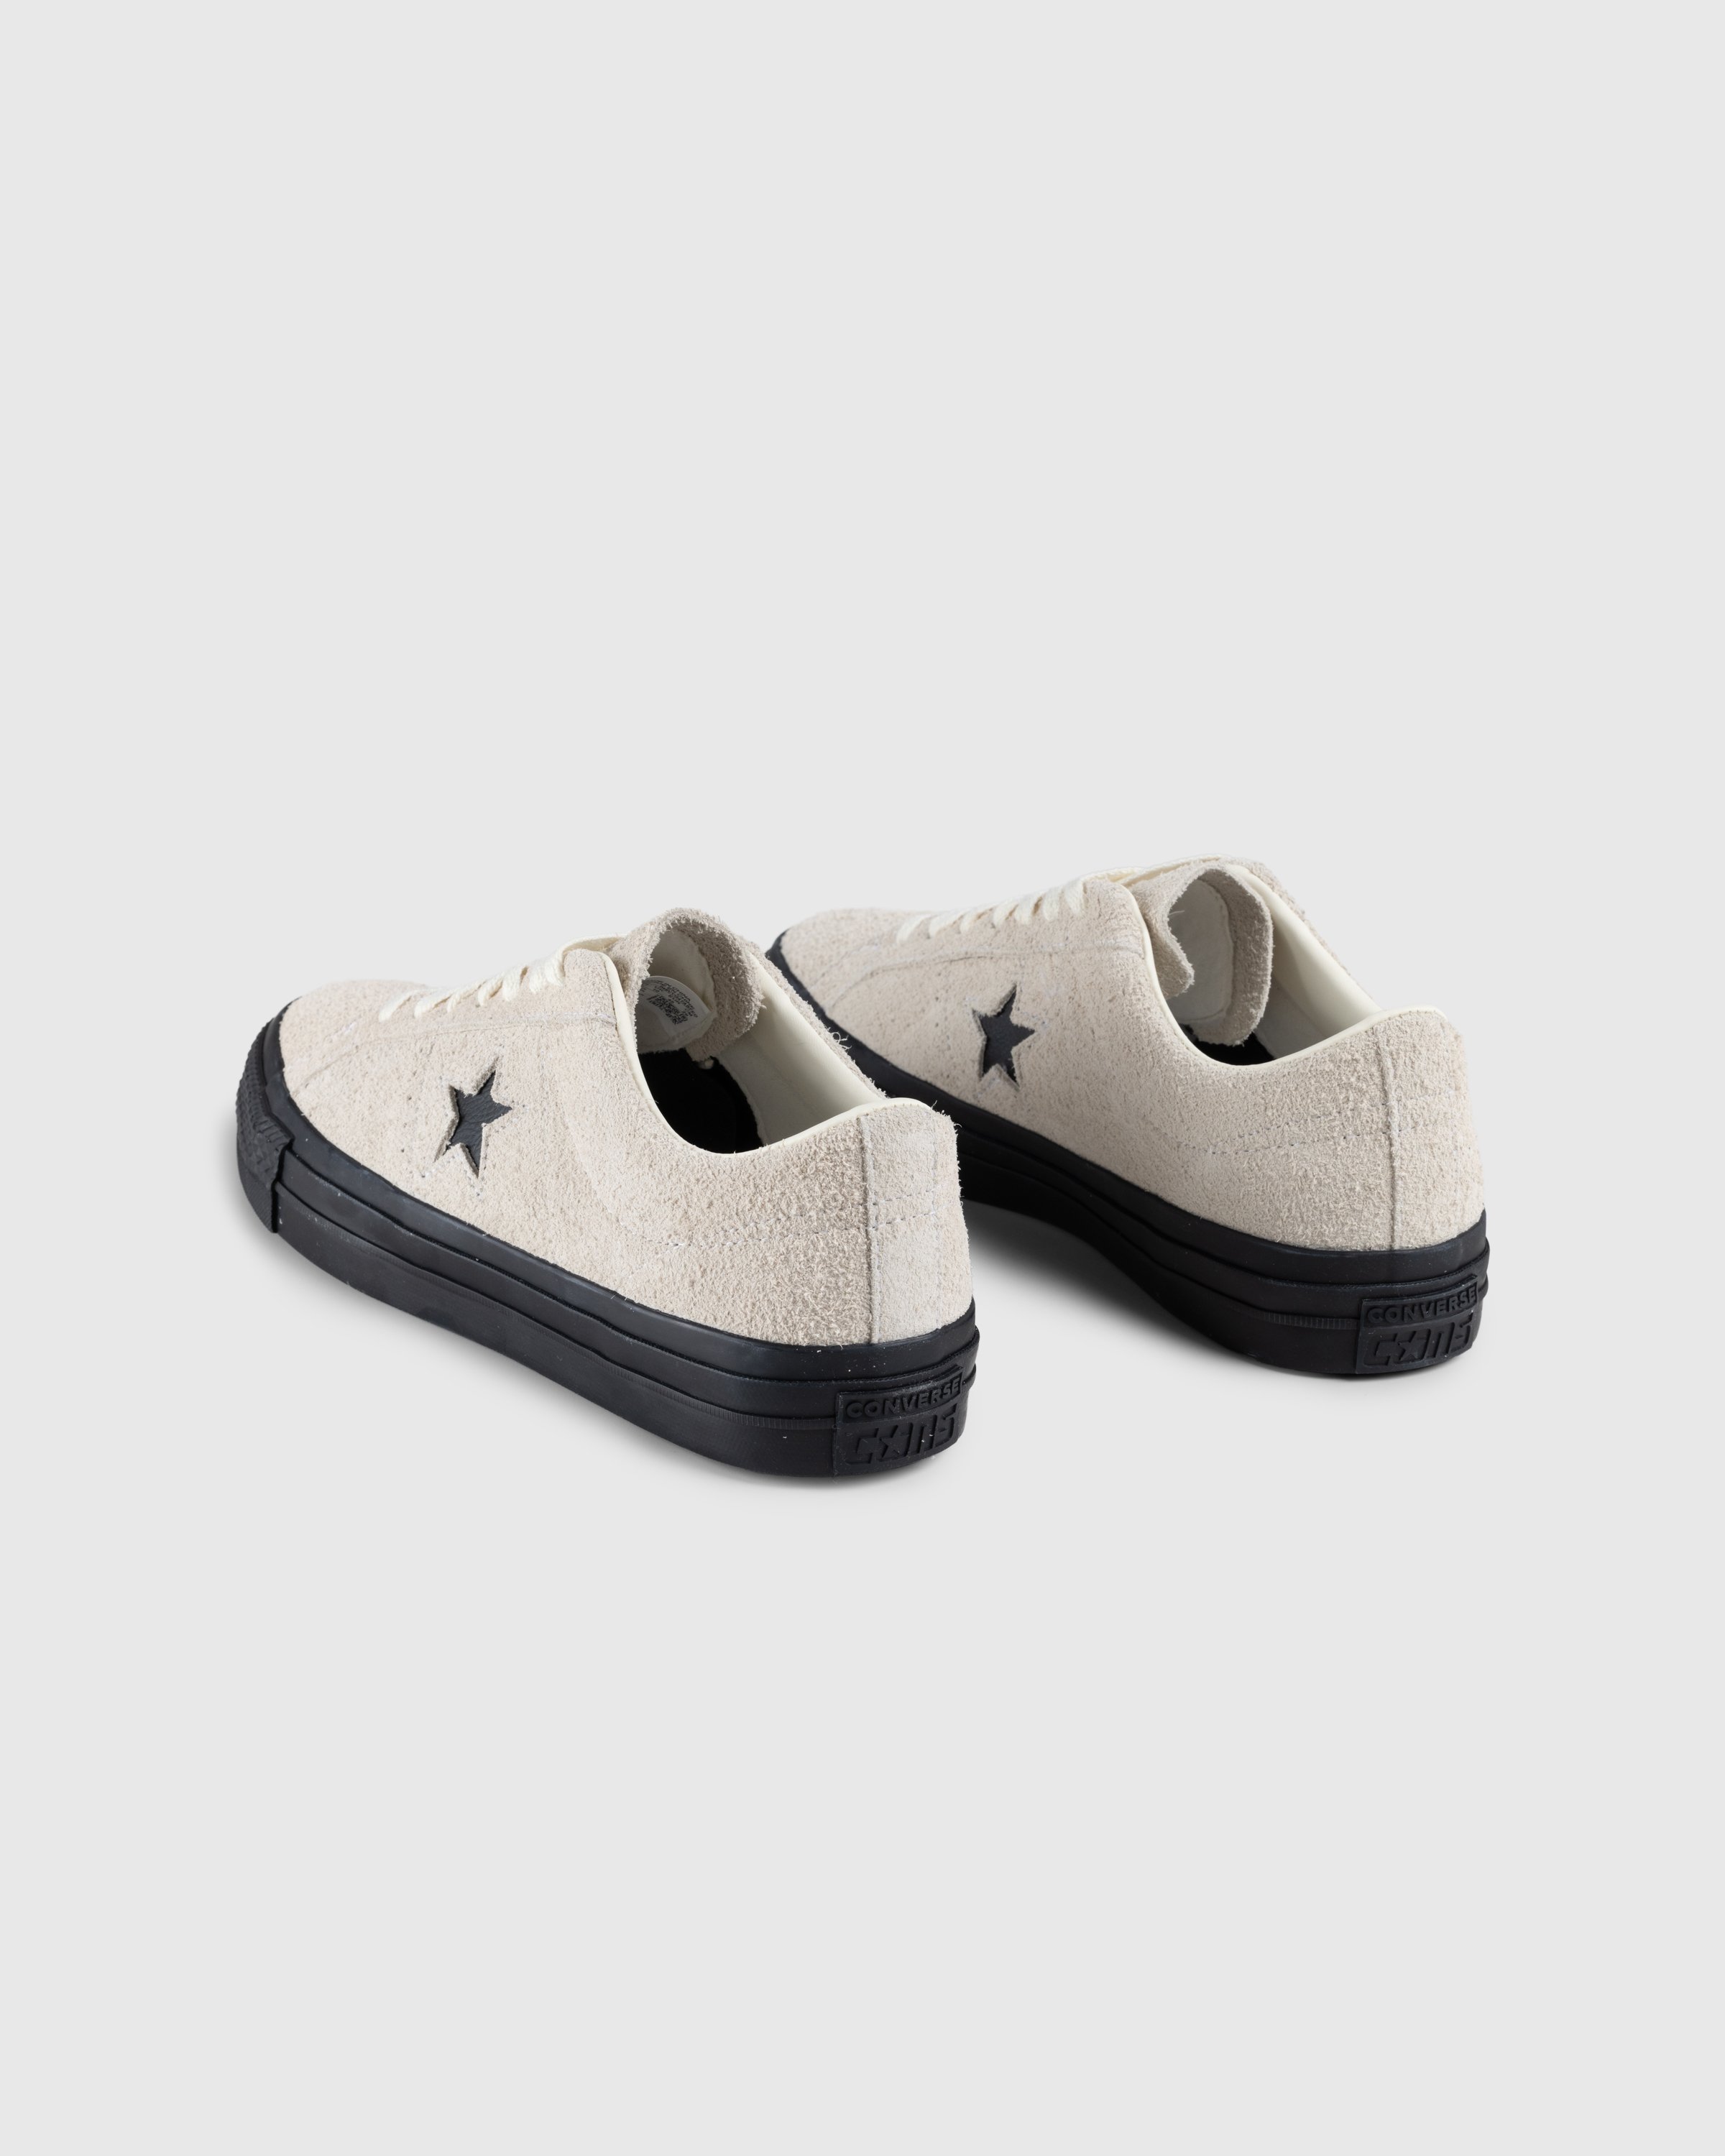 Converse - One Star Pro Ox Egret/Black - Footwear - Beige - Image 4